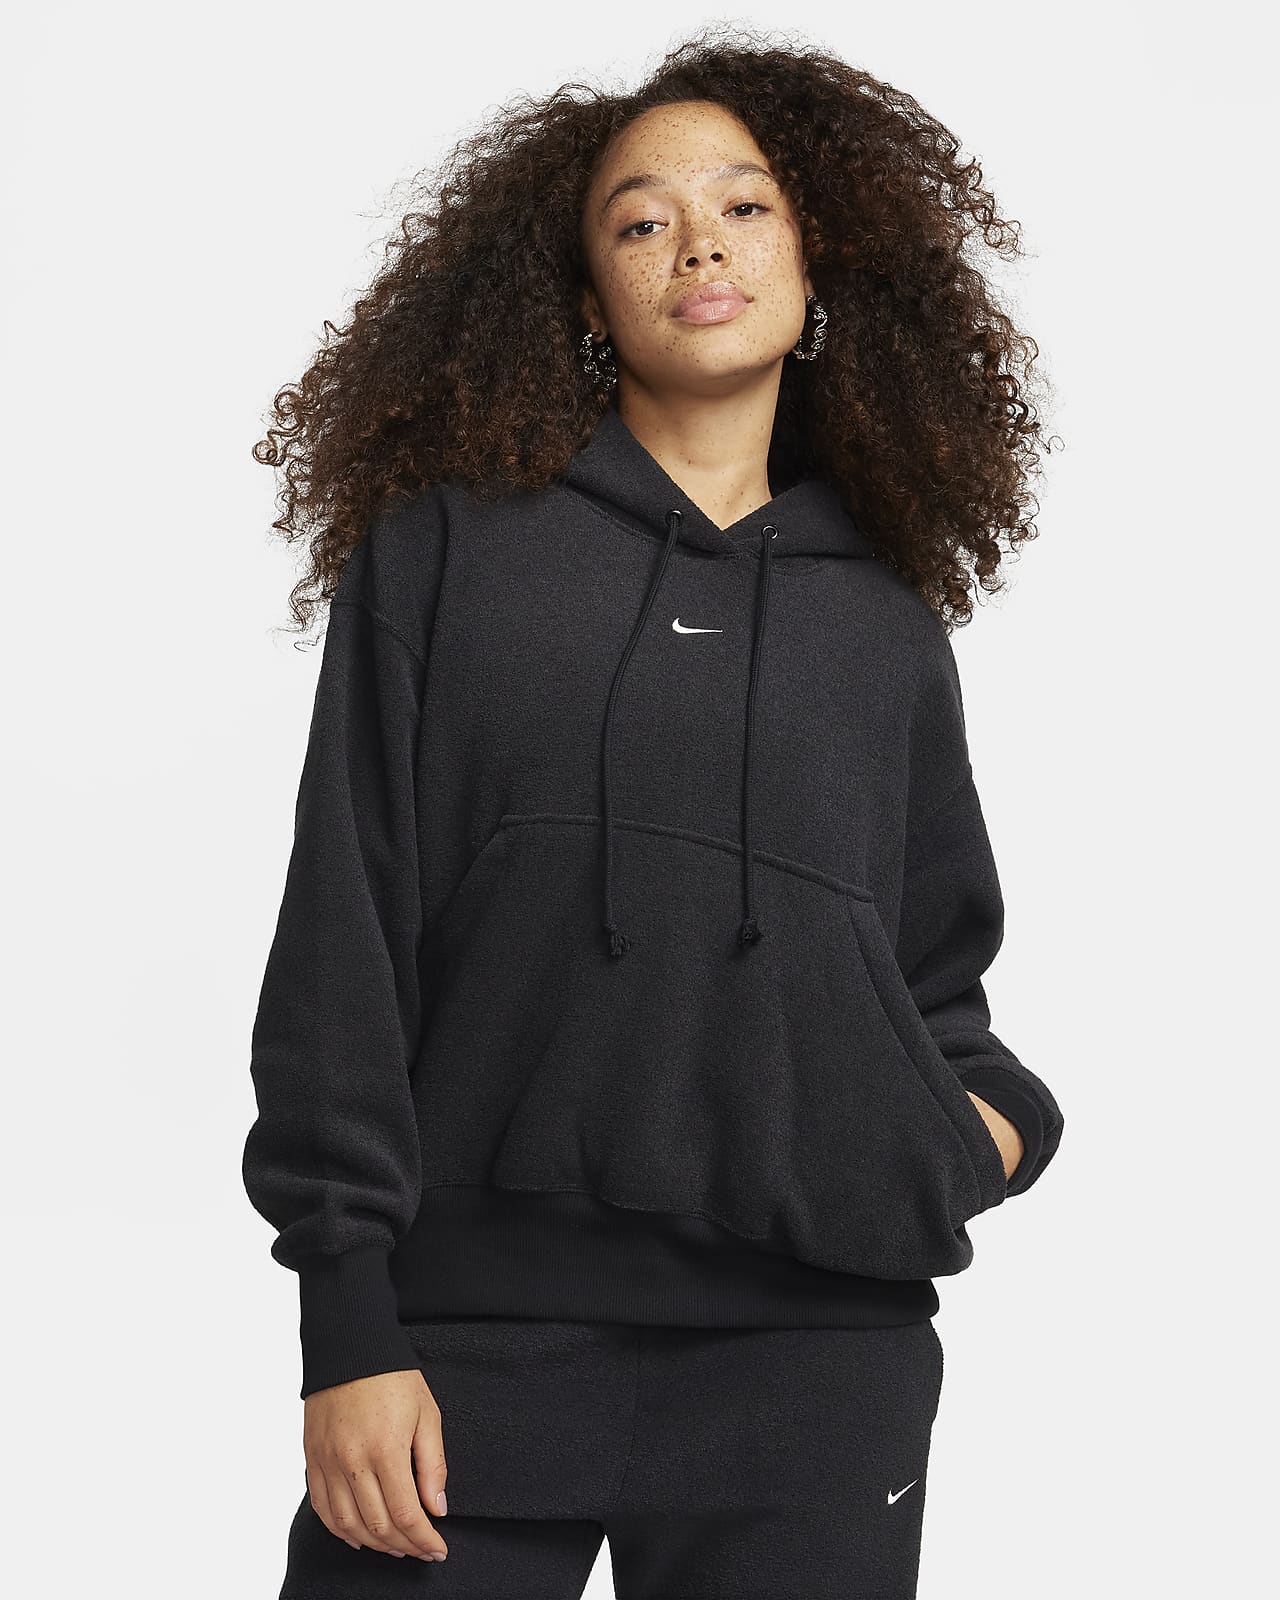 Γυναικεία άνετη μπλούζα με κουκούλα από φλις ύφασμα σε φαρδιά γραμμή Nike Sportswear Phoenix Plush